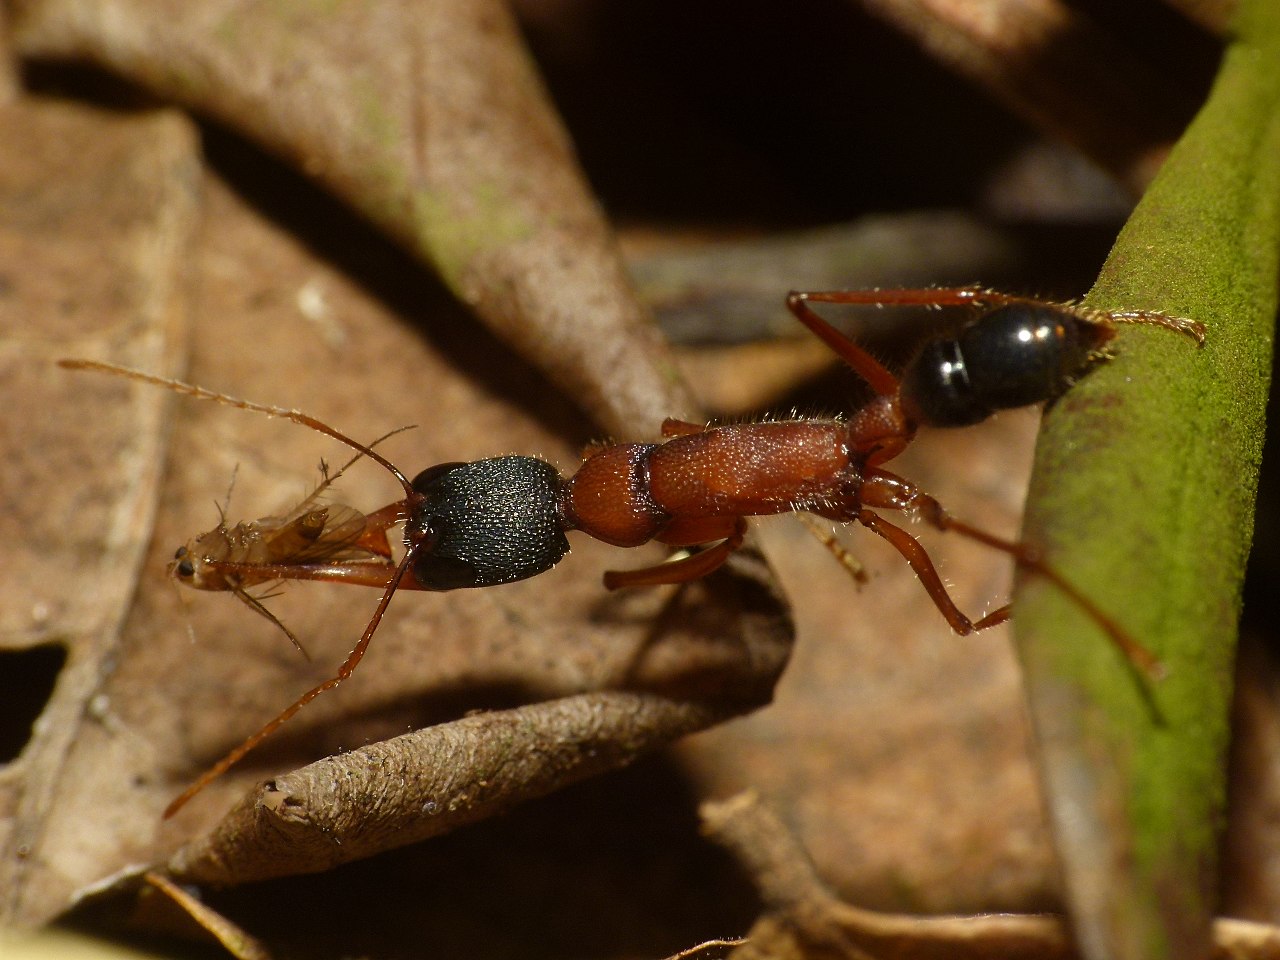 Harpegnathos saltator, Iindický skákající mravenec (někdy nazývaný Jerdonův mravenec). Druh mravence honosícího se obzvlášť dlouhými čelistmi a schopností vyskočit i deset centimetrů vysoko. Nejen, že tito mravenci bravurně skáčou, podle potřeby si t